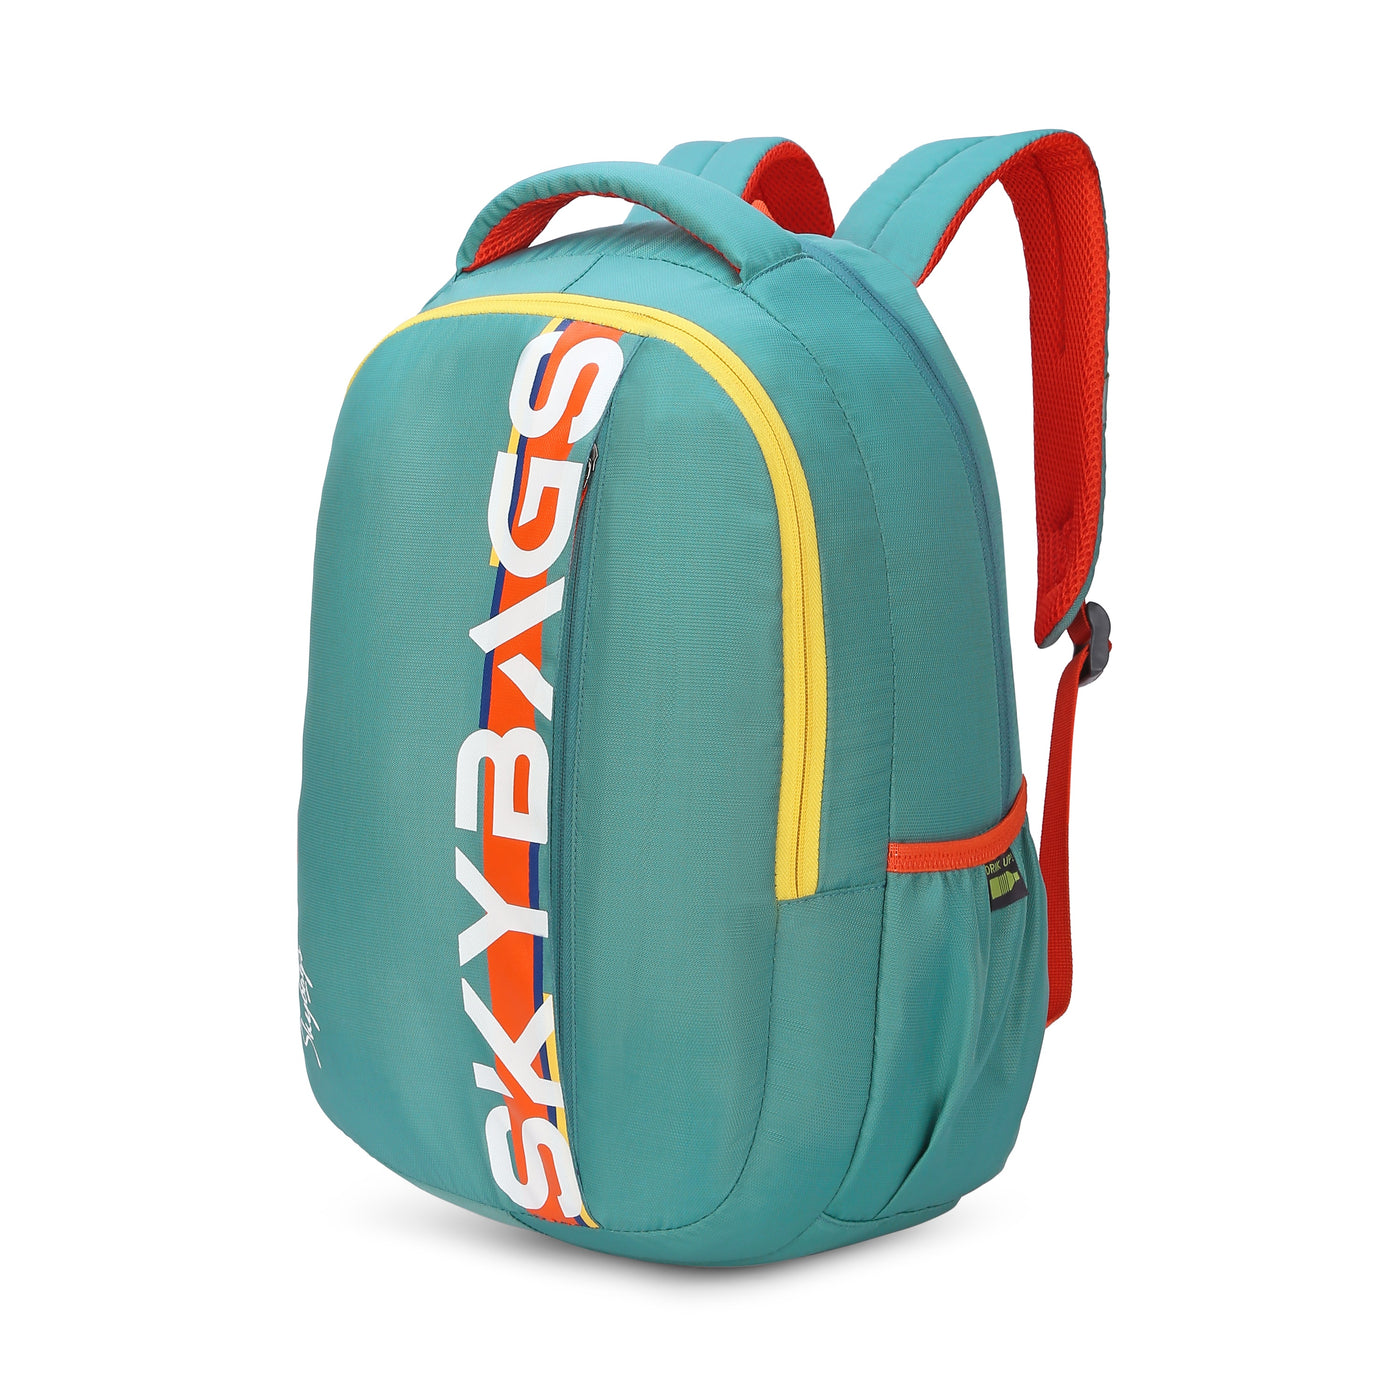 SKYBAGS Quality Double Shoulder Bag/ Backpack (School Bag/ Laptop Bag/Office  Bag)